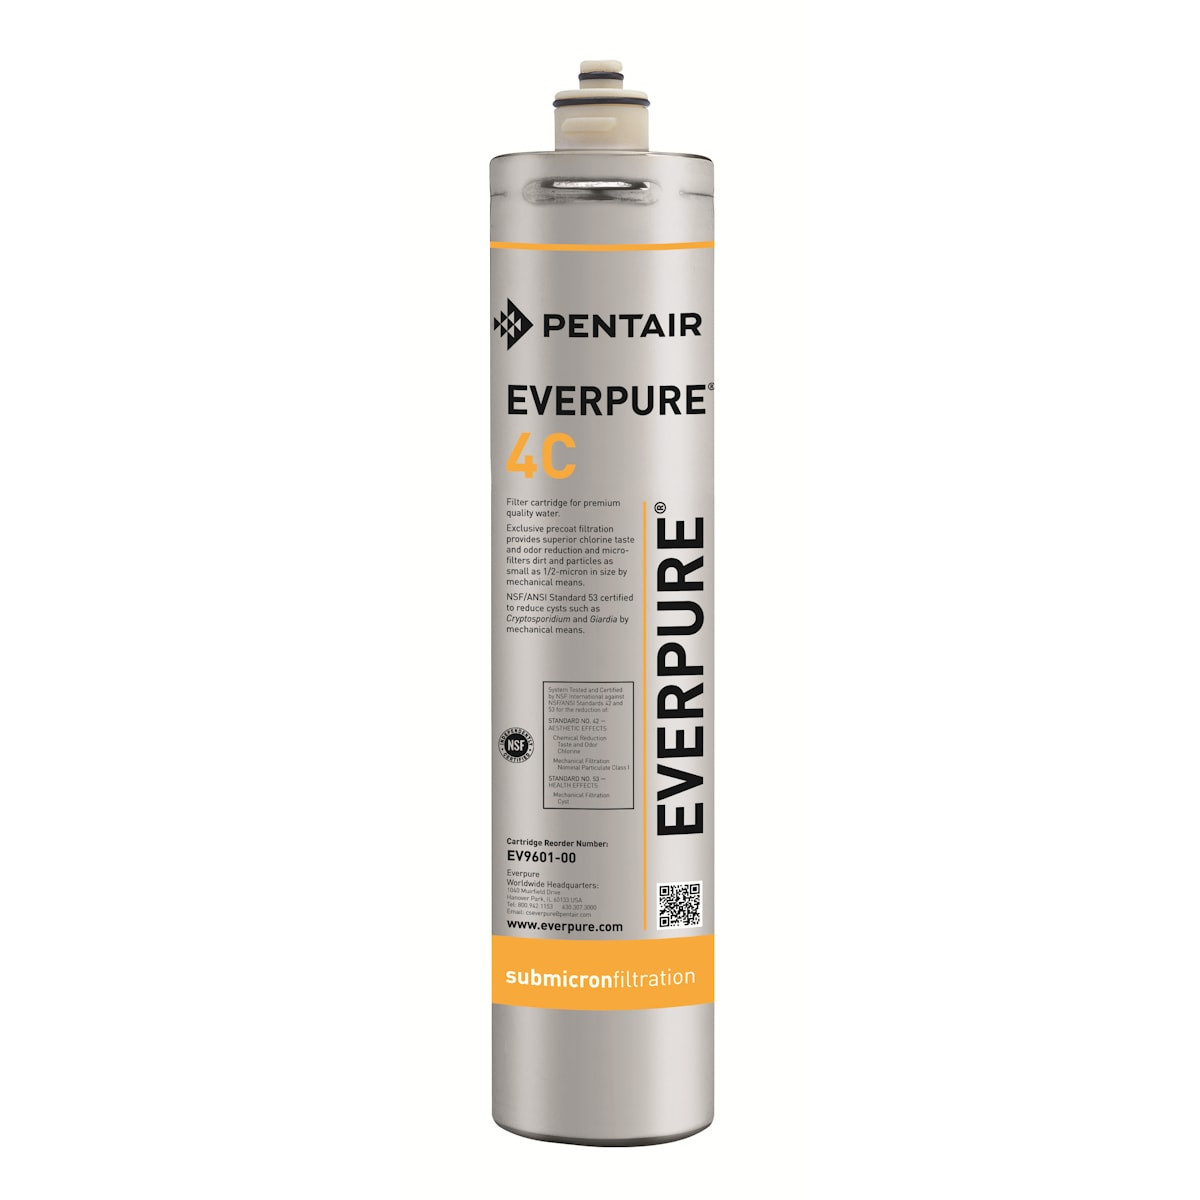 Everpure 4C Cartouche filtrante de rechange pour eau